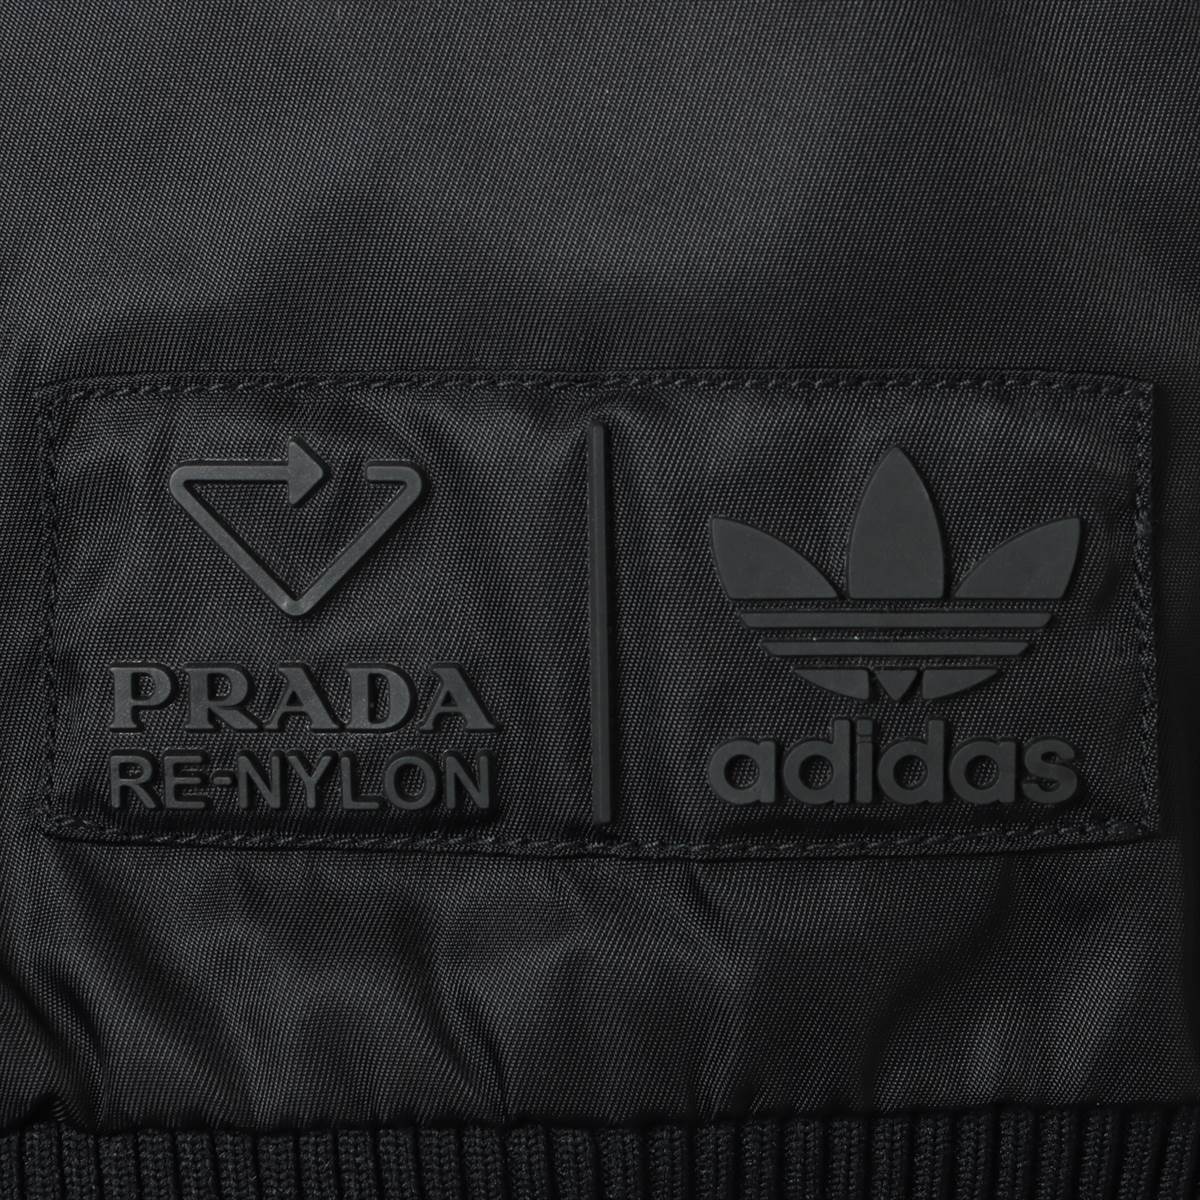 Prada x Adidas Triangle logo 21AW Nylon Blouson 44 Men's Black  RE-NYLON BOMBER JACKET SGB936